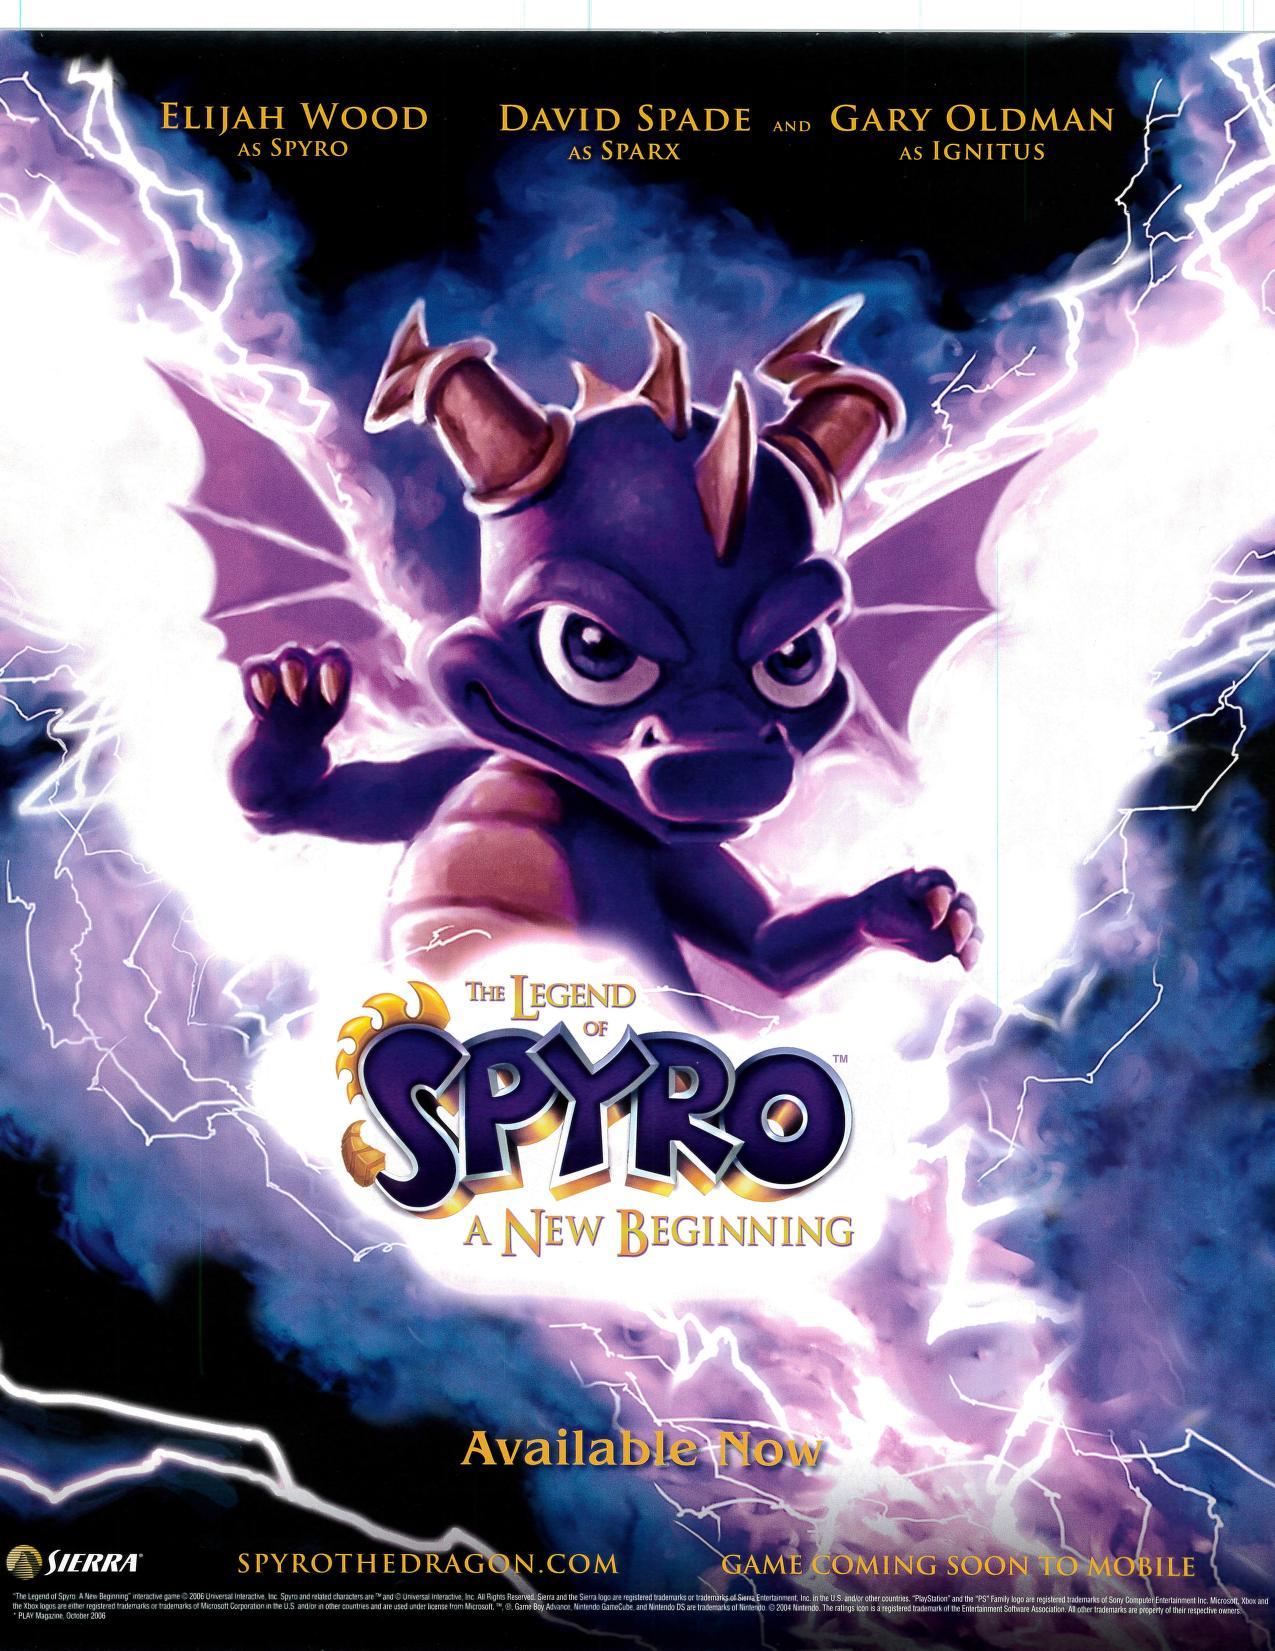 spyro legend of spyro